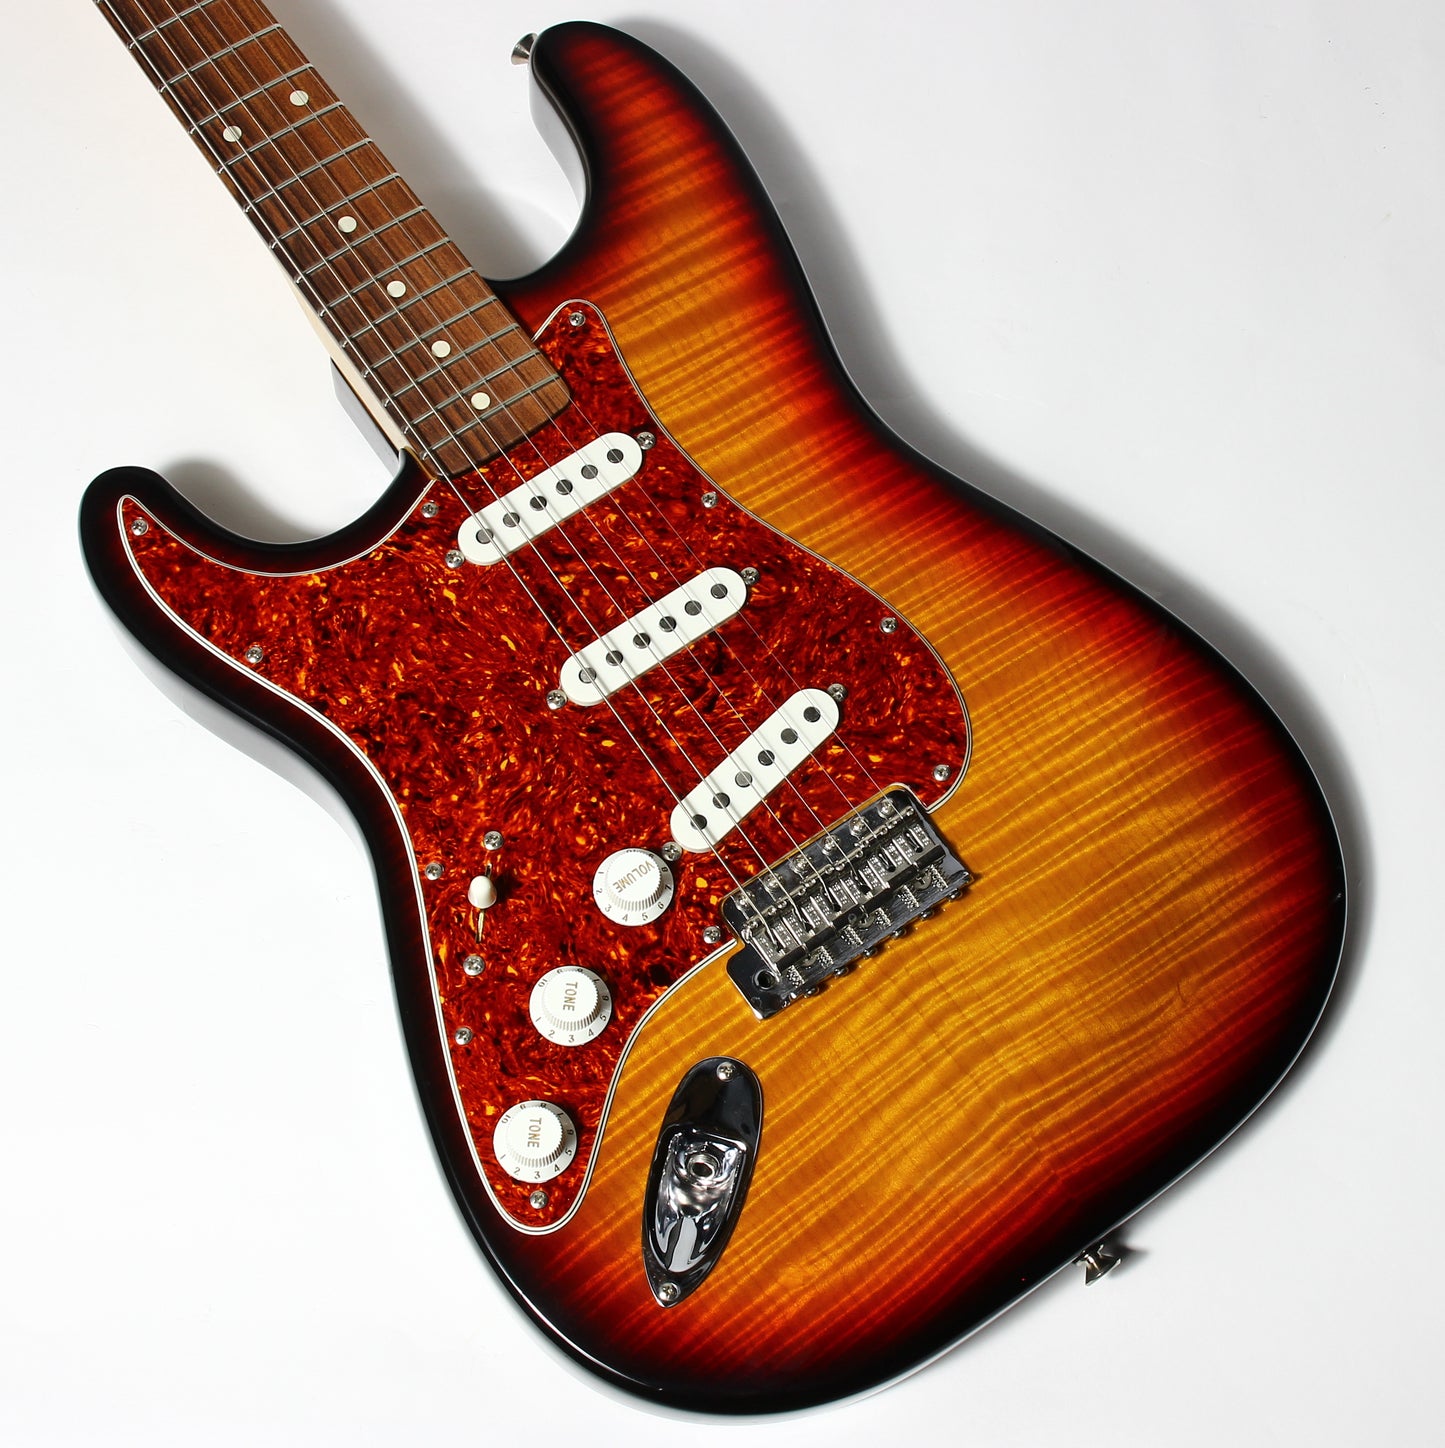 1992 Fender Custom Shop Masterbuilt Flametop Stratocaster | J.W. Black Sunburst Left-Handed strung Righty | One-of-a-Kind!